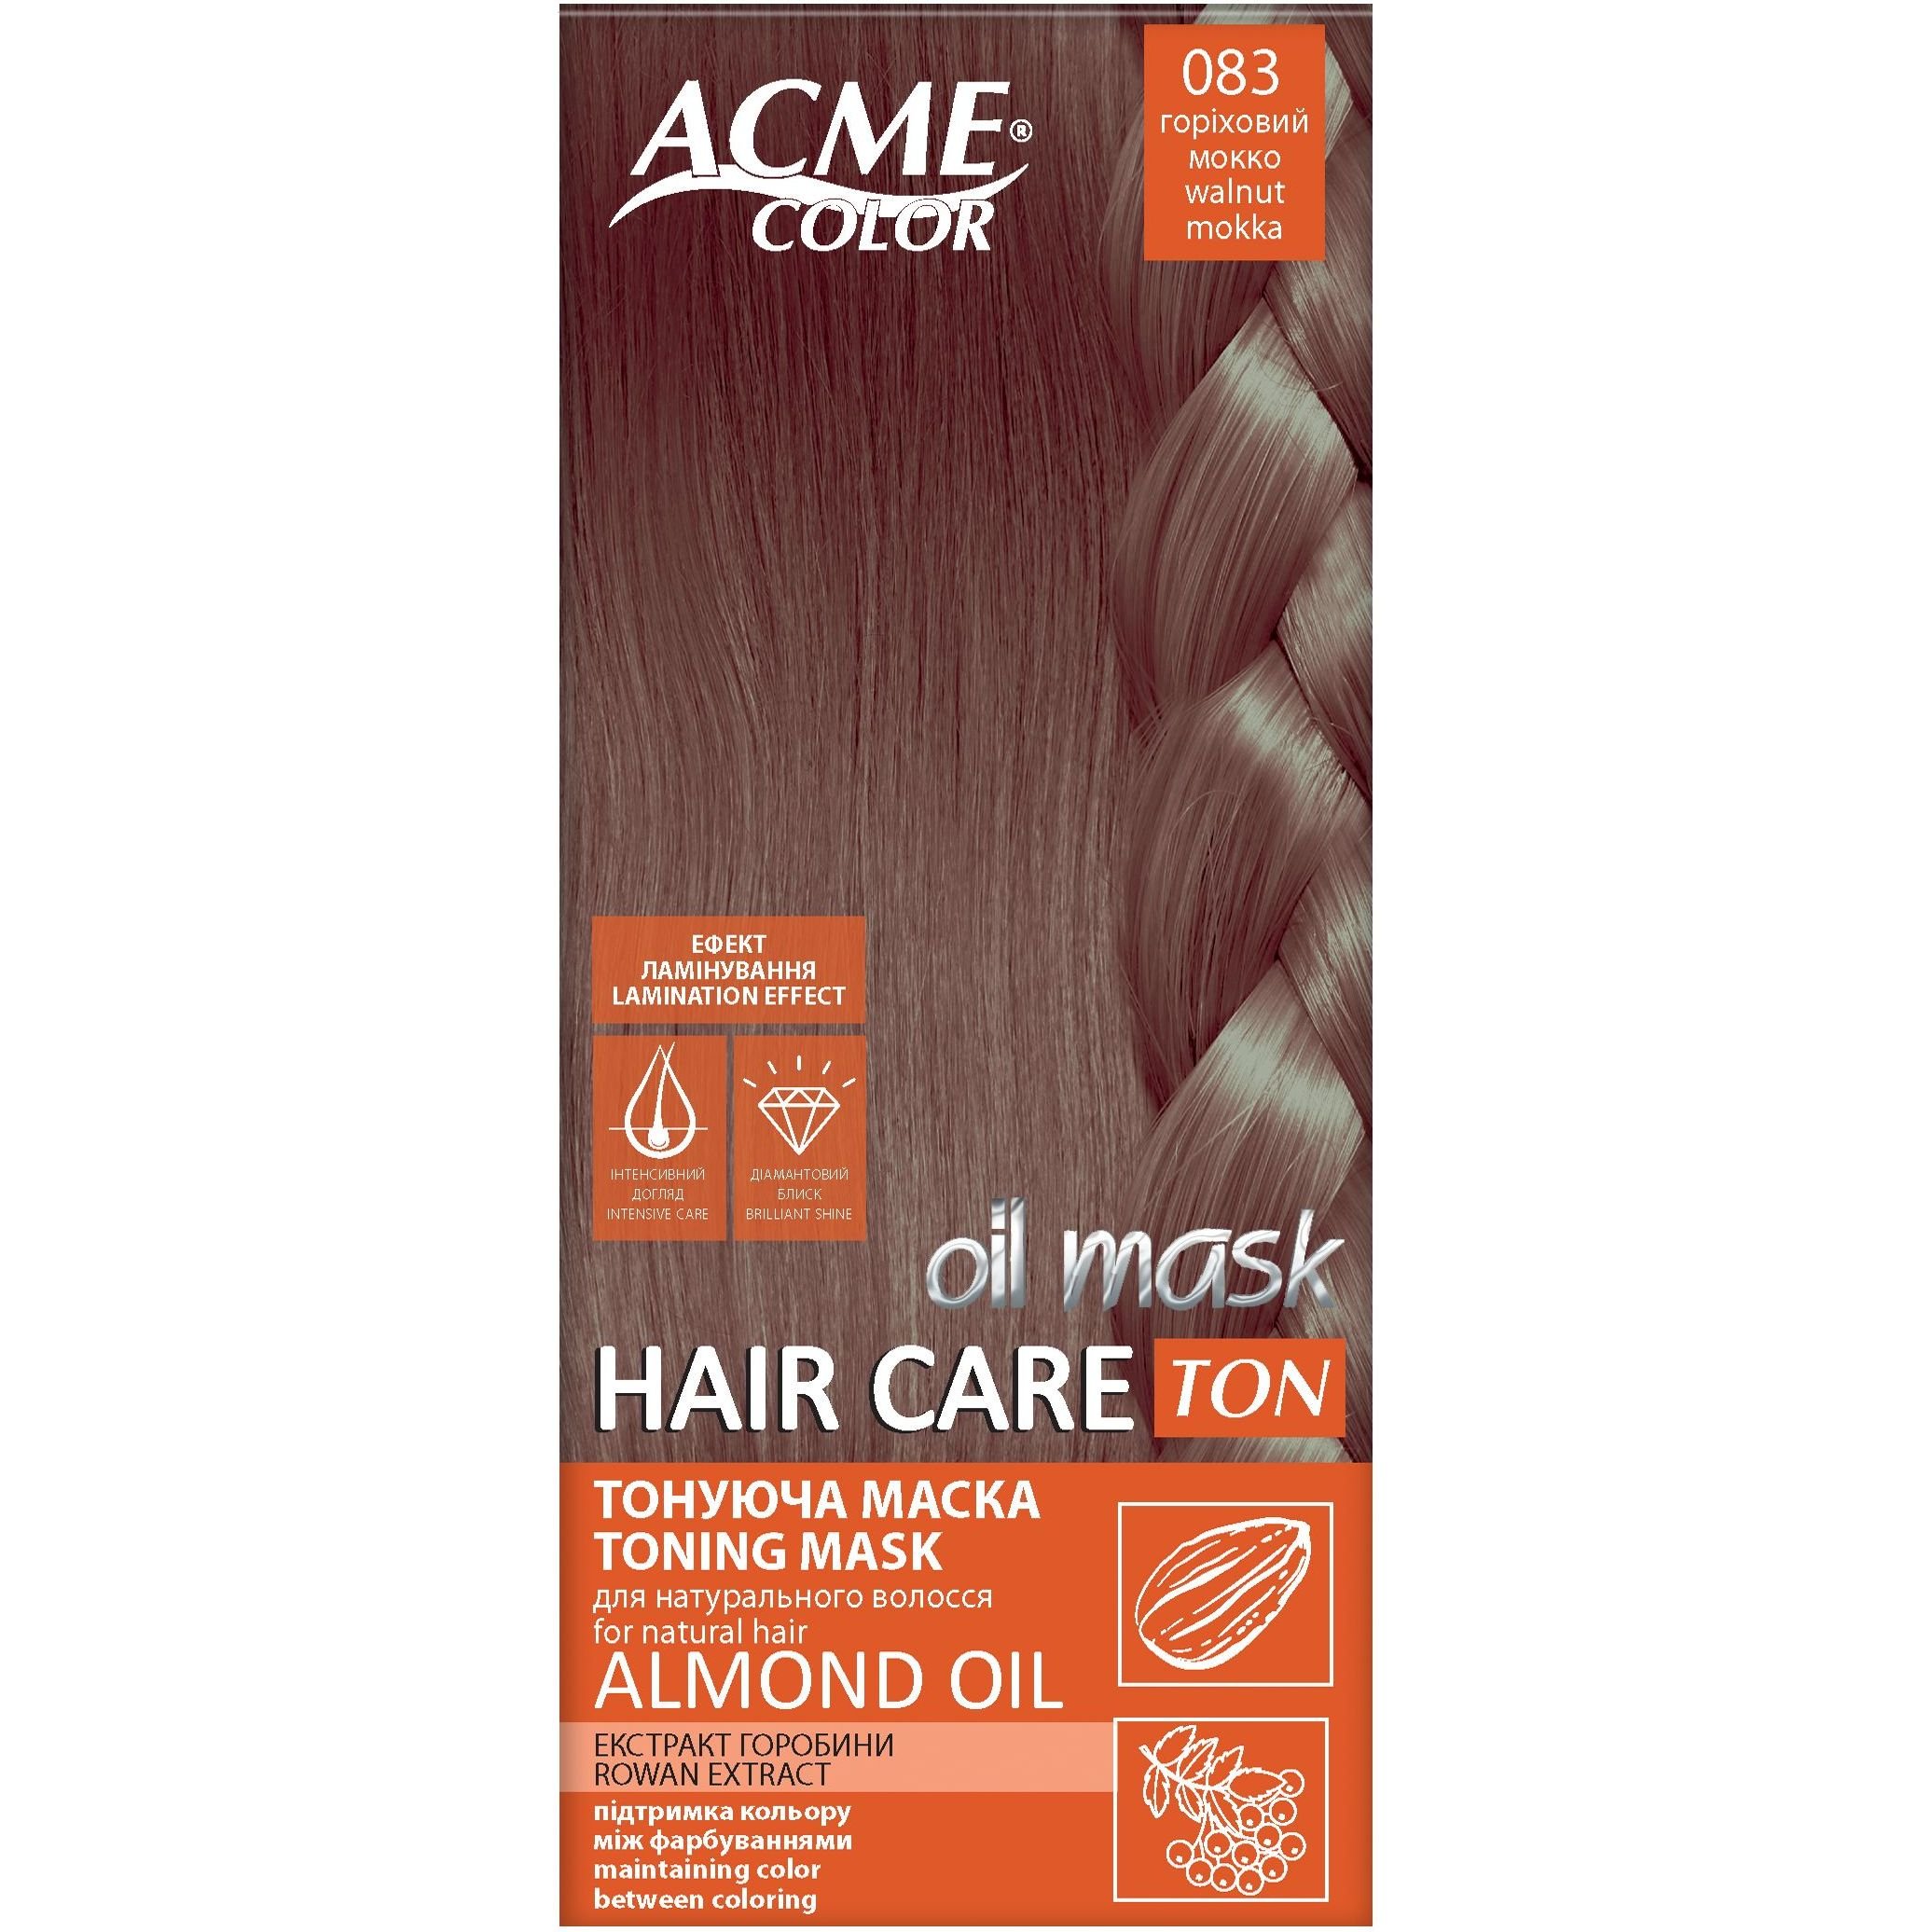 Тонирующая маска для волос Acme Color Hair Care Ton oil mask, тон 083, ореховый мокко, 30 мл - фото 1